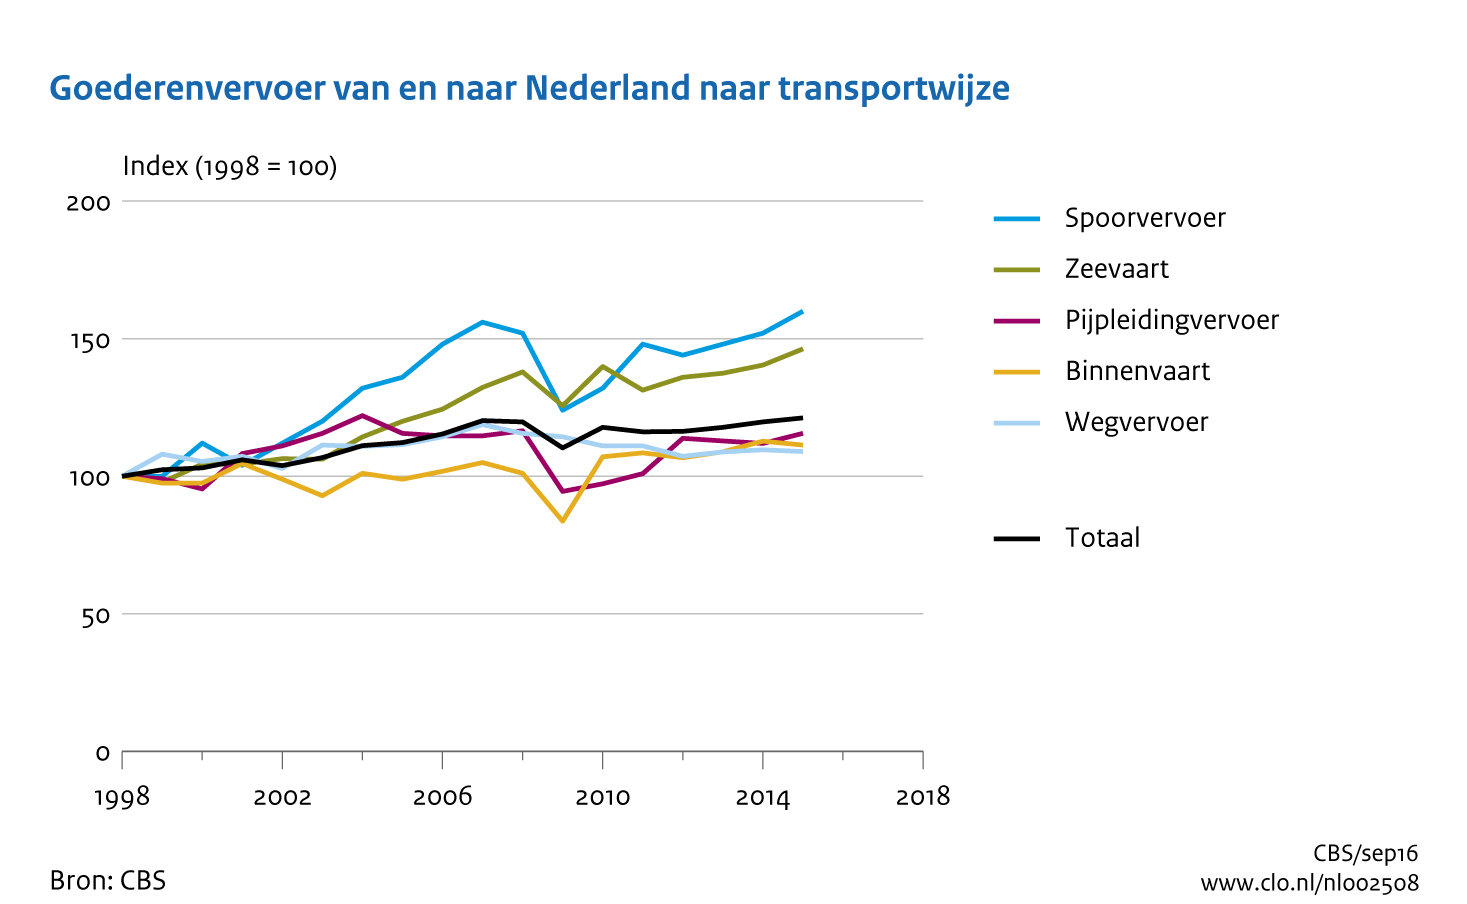 Figuur Ontwikkeling goederenvervoer van en naar Nederland. In de rest van de tekst wordt deze figuur uitgebreider uitgelegd.